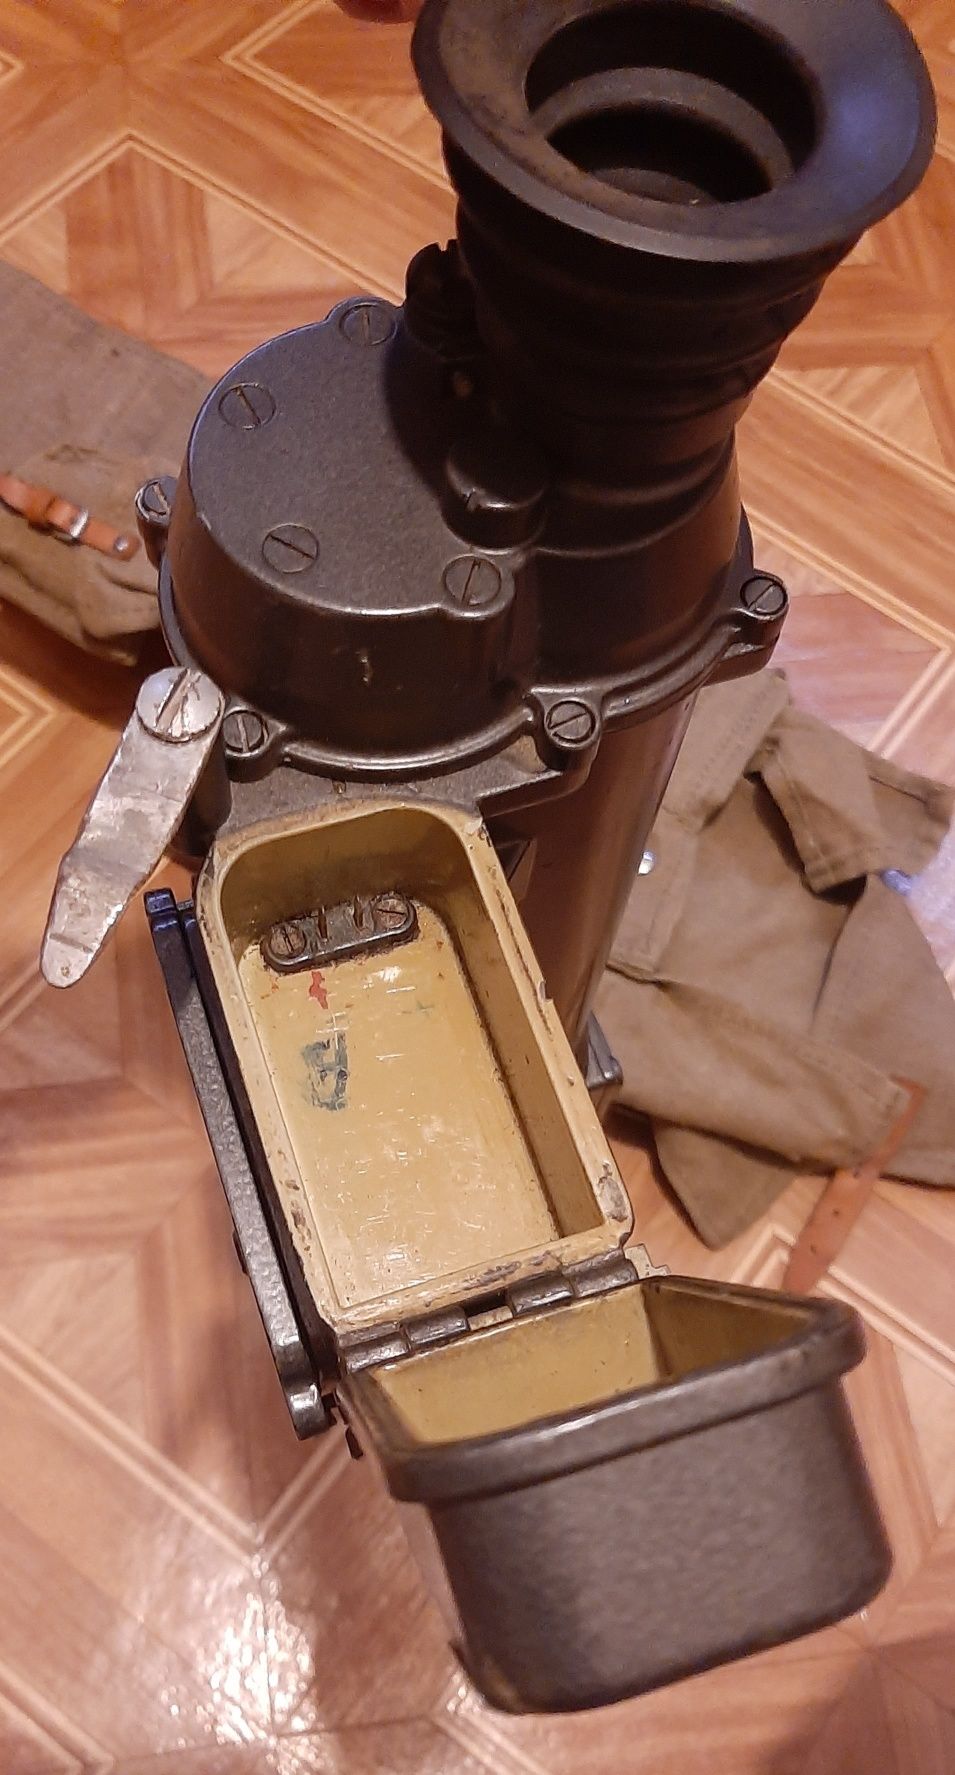 PPN-3 noktowizor PPN3 celownik wojskowy luneta CCCP radziecki ZSSR